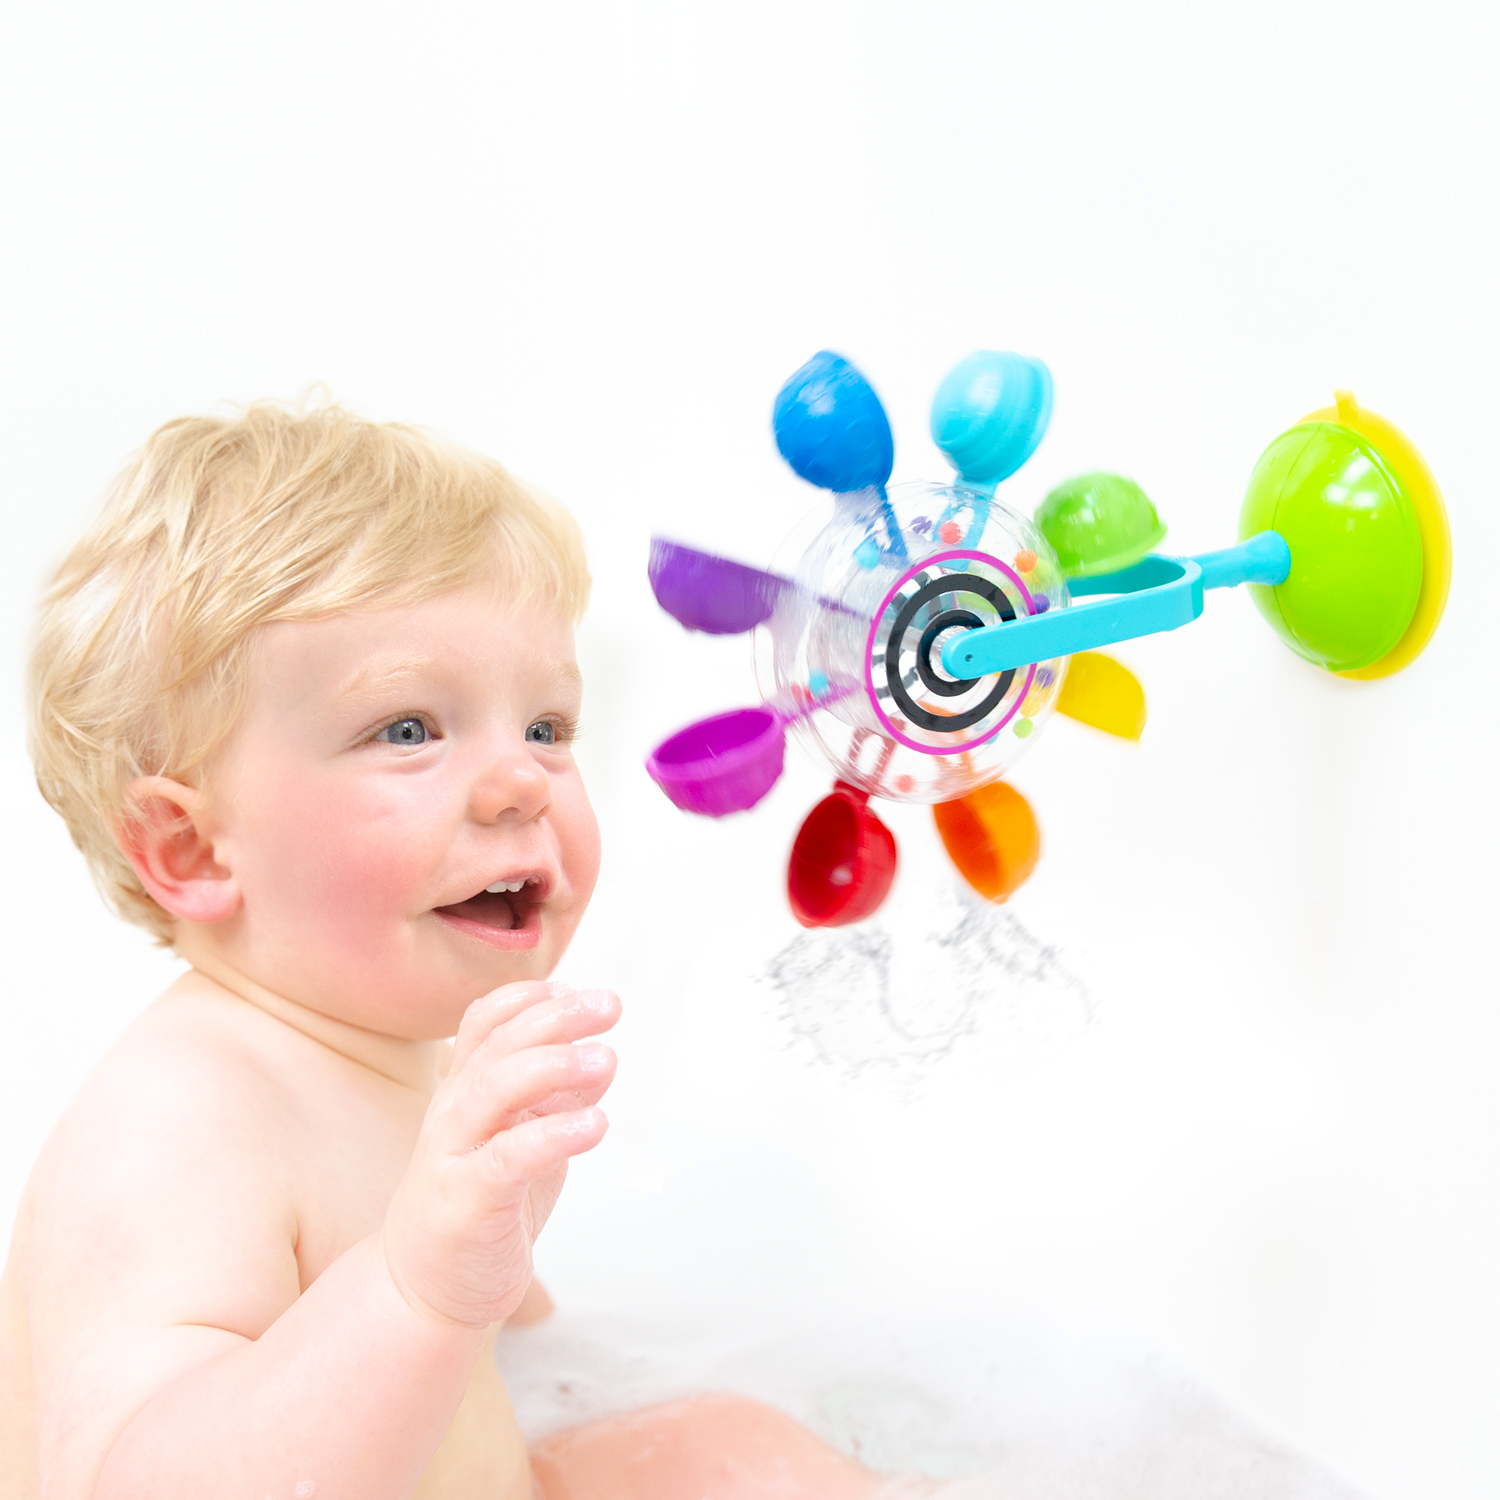 Zabawki do kąpieli dla dzieci. Przegląd najbardziej szalonych propozycji